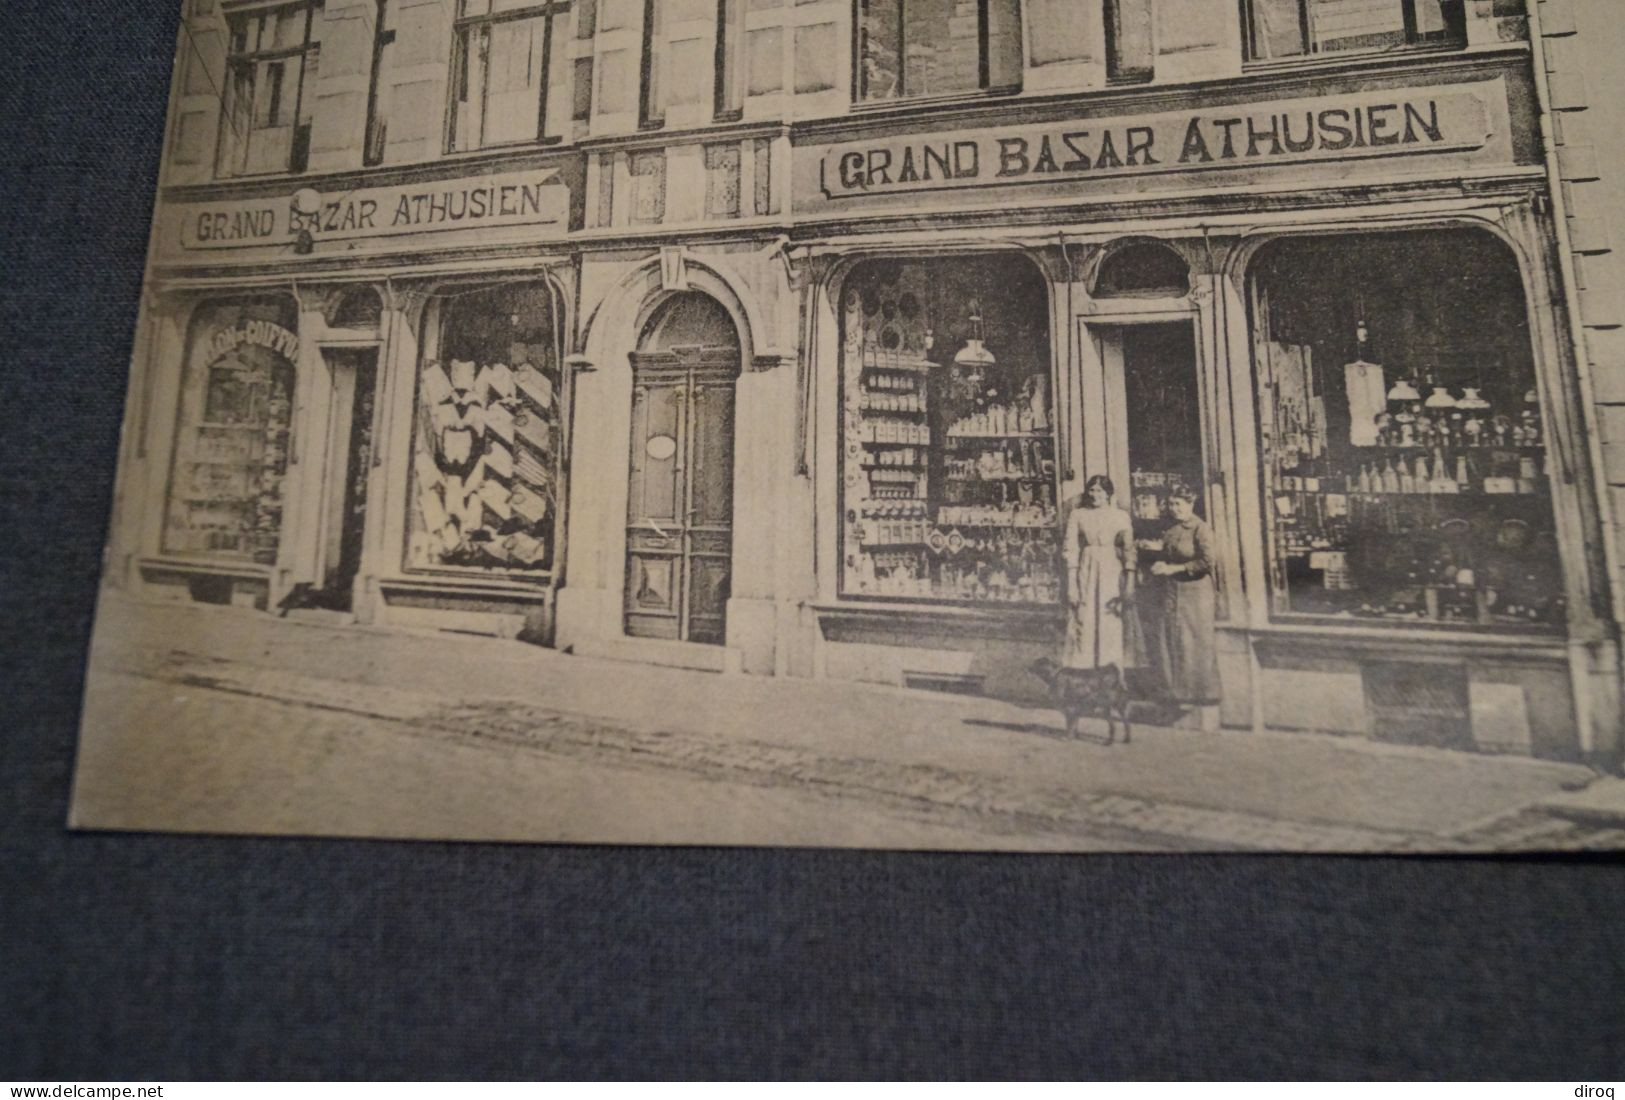 Ancienne Grande Photo,Commerces De Athus, 29 Cm. Sur 22 Cm. - Anciennes (Av. 1900)